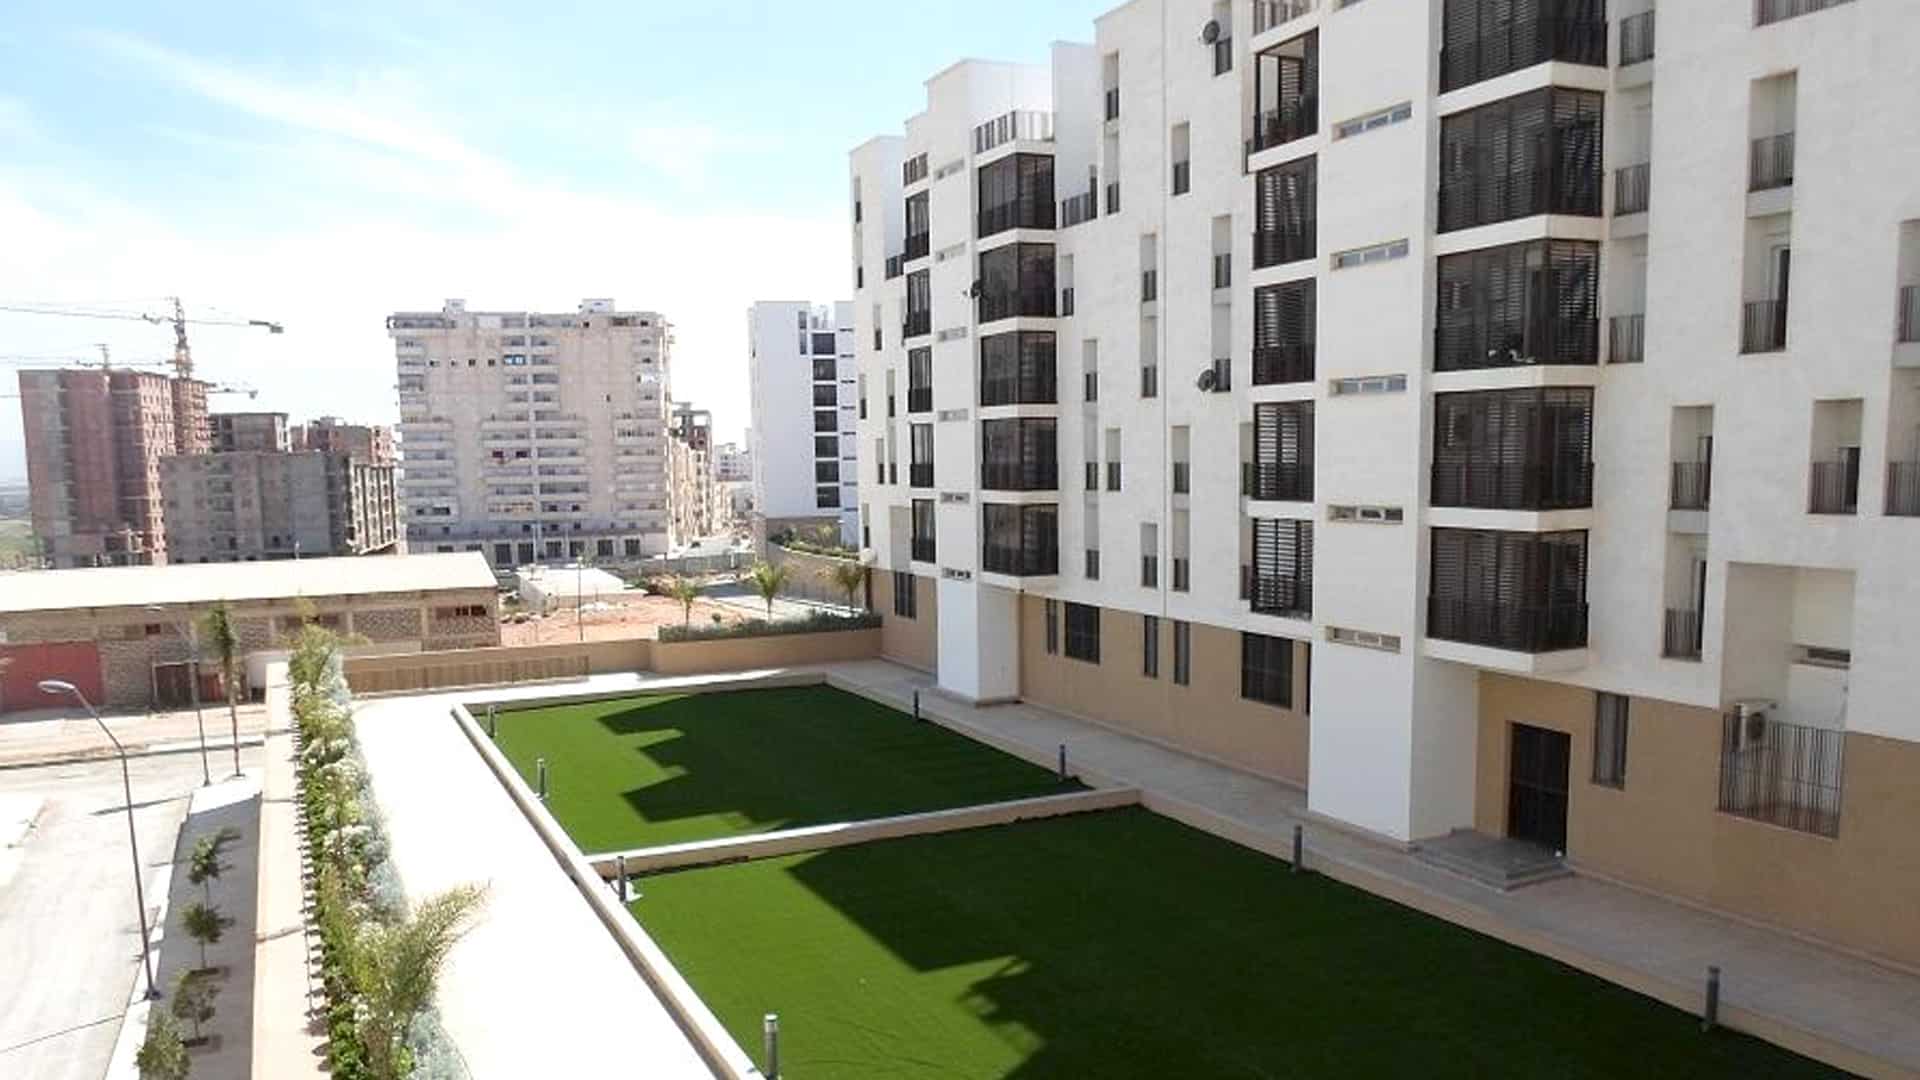 La wilaya d'El Tarf compte distribuer 1360 logements